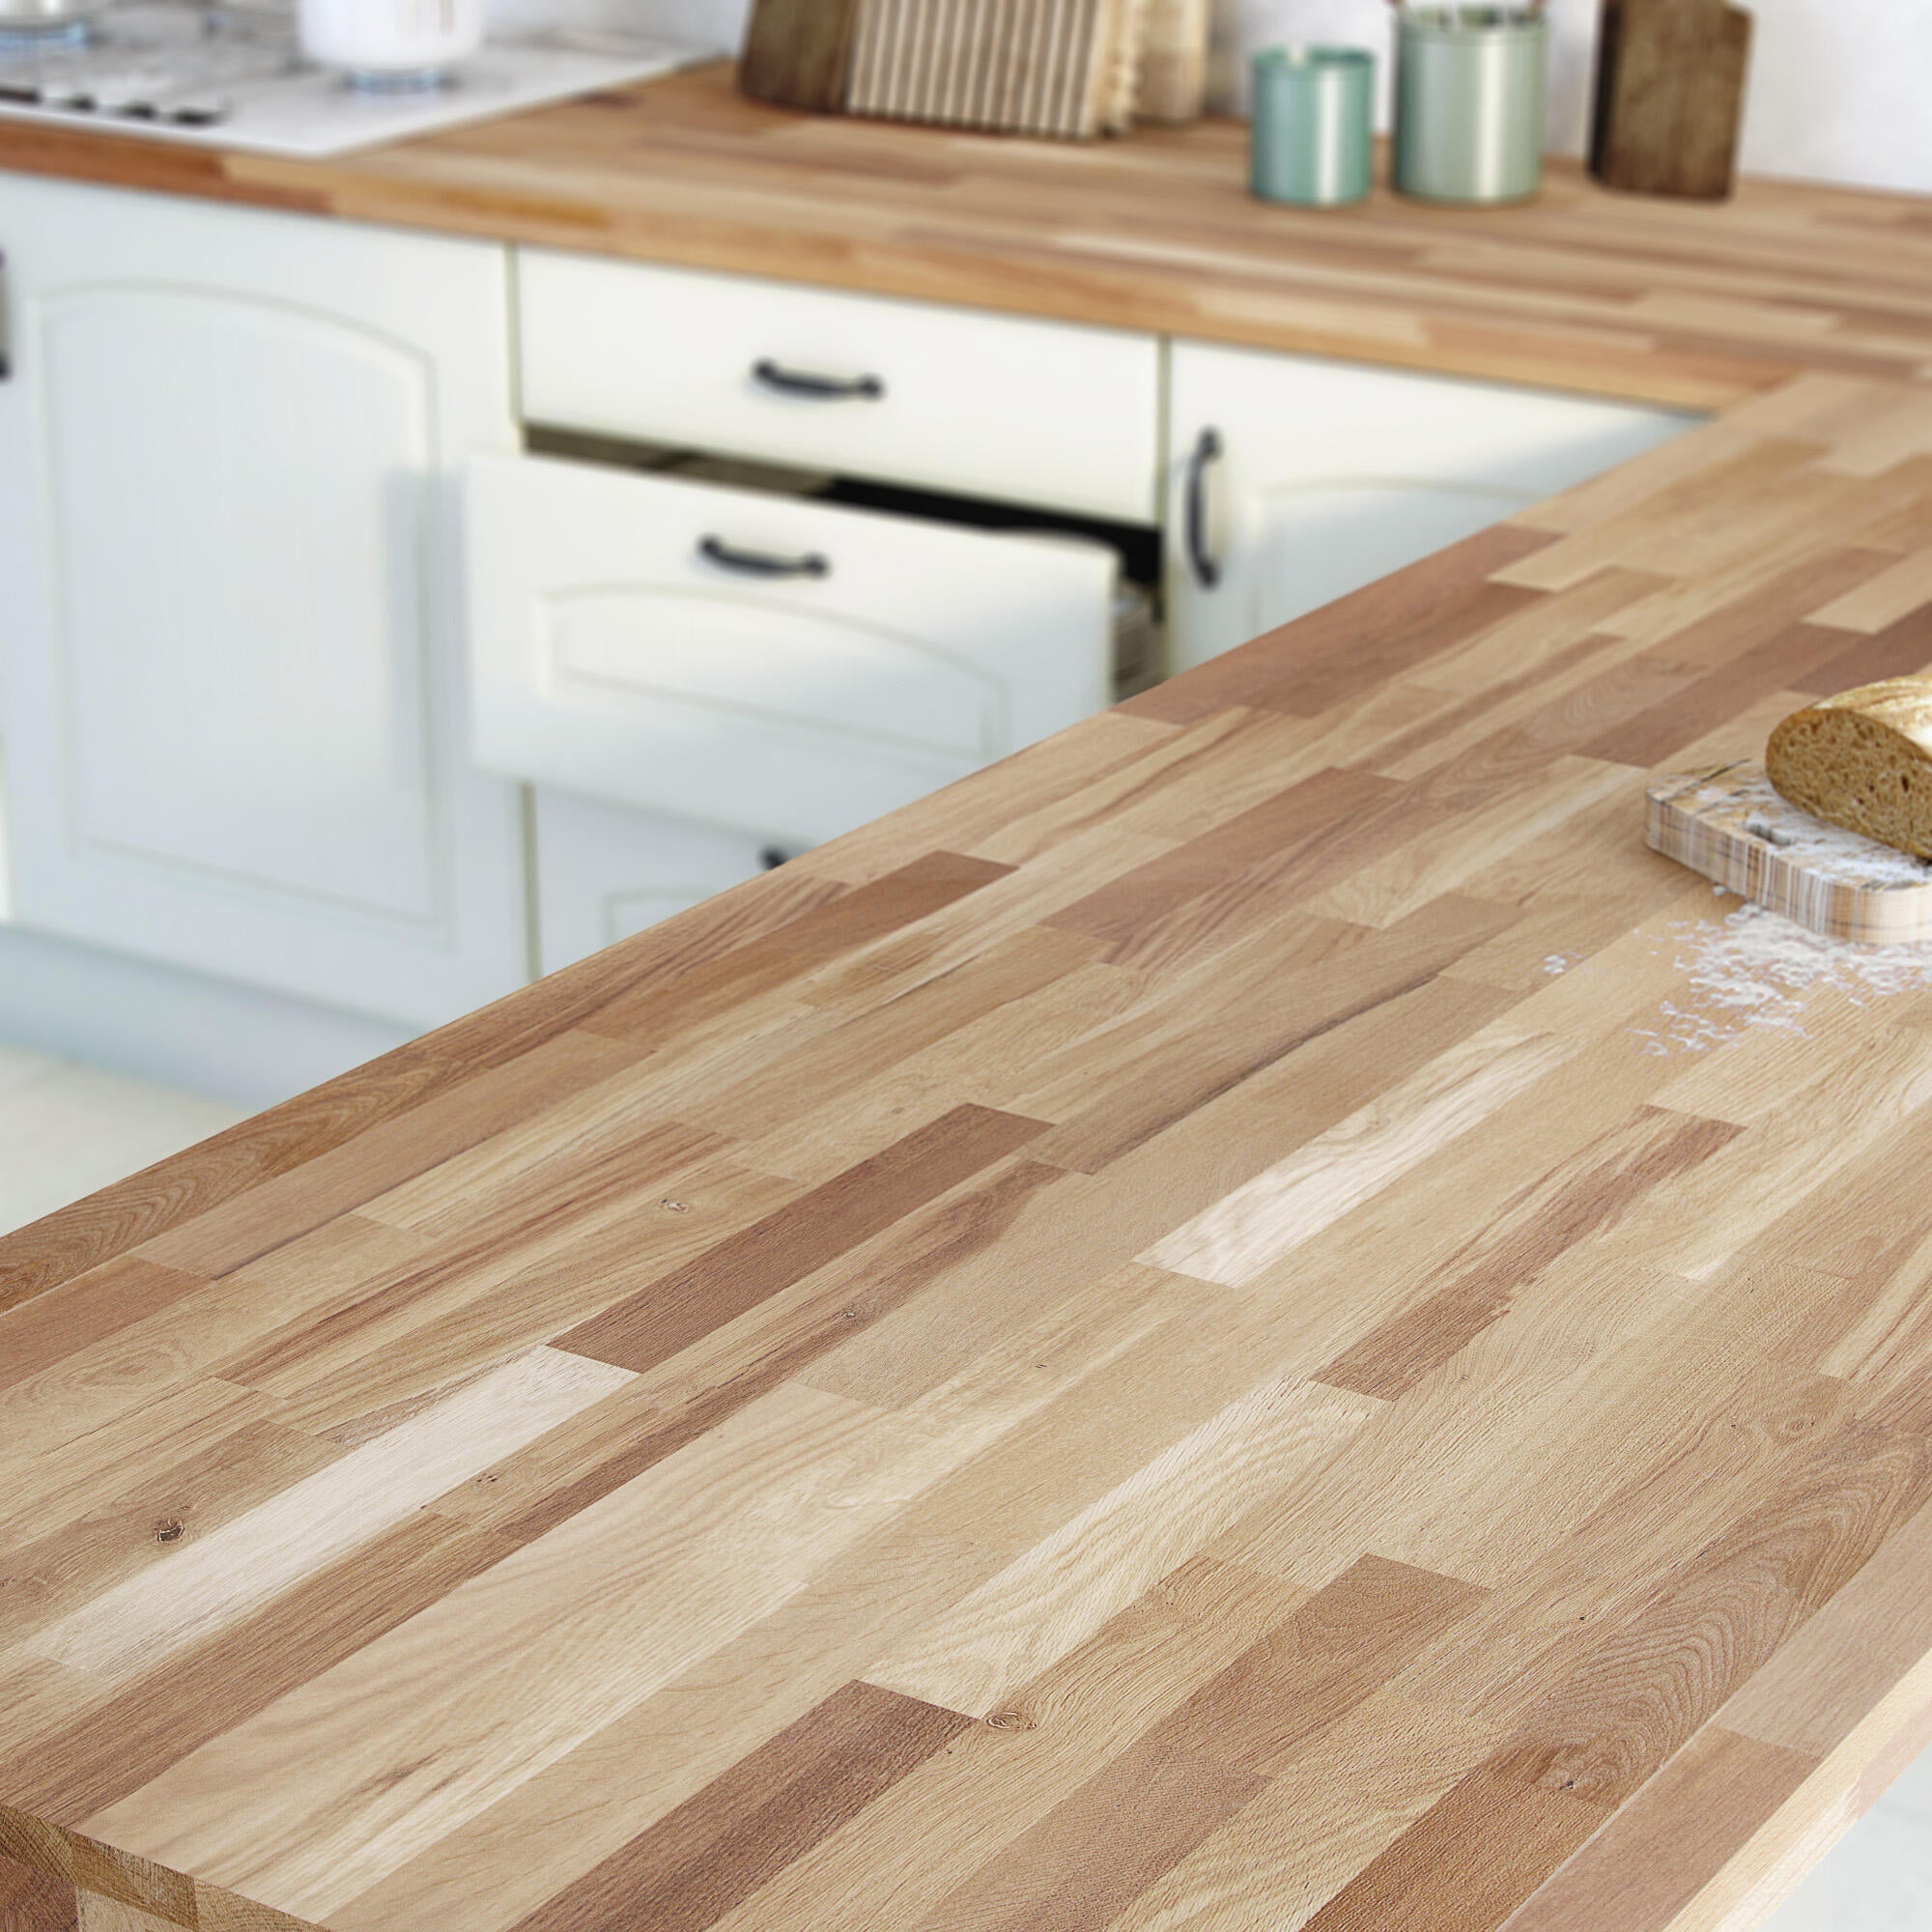 offerta piano cucina in legno su misura-promozione realizzazione su misura  piano cucina